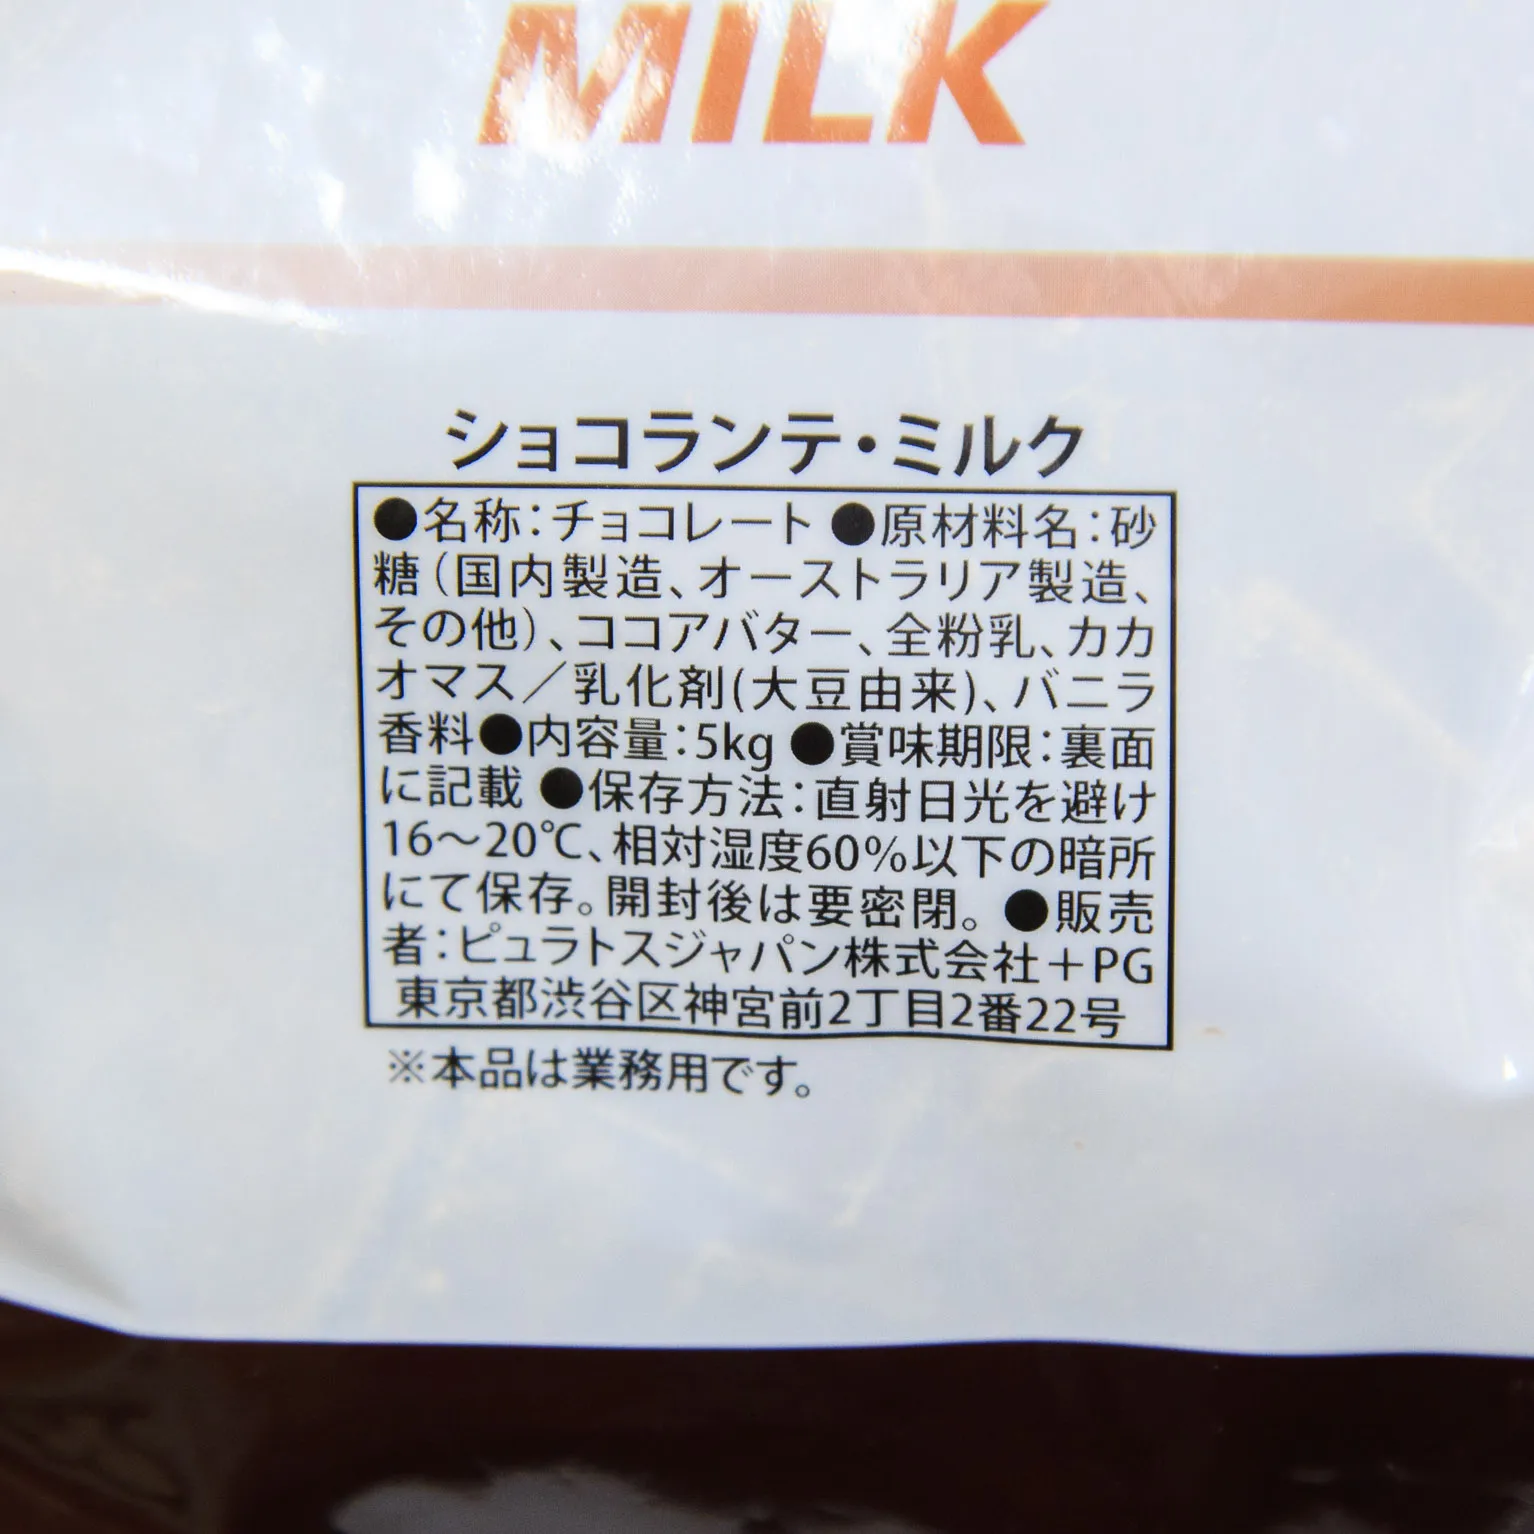 ショコランテ・ミルク 39% 5